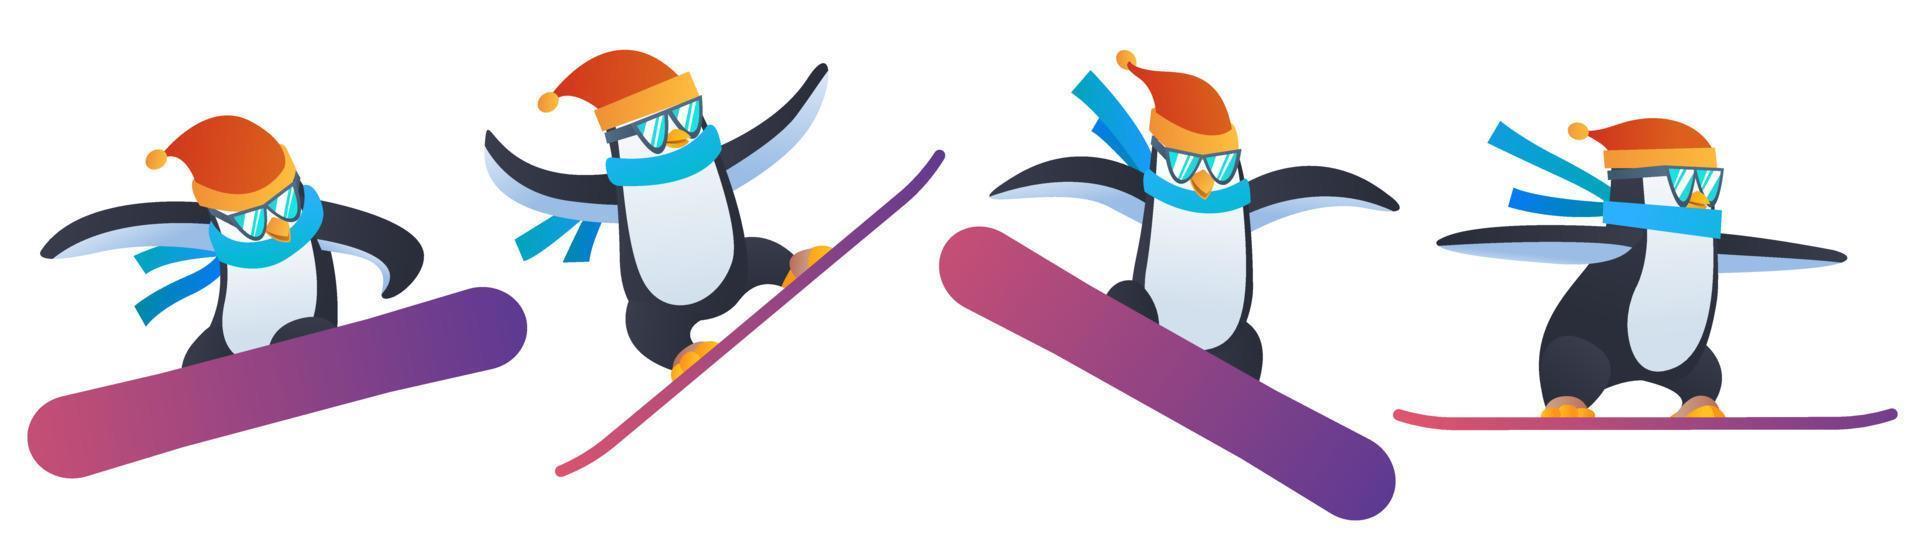 pingvin snowboard i olika poser karaktär vektor